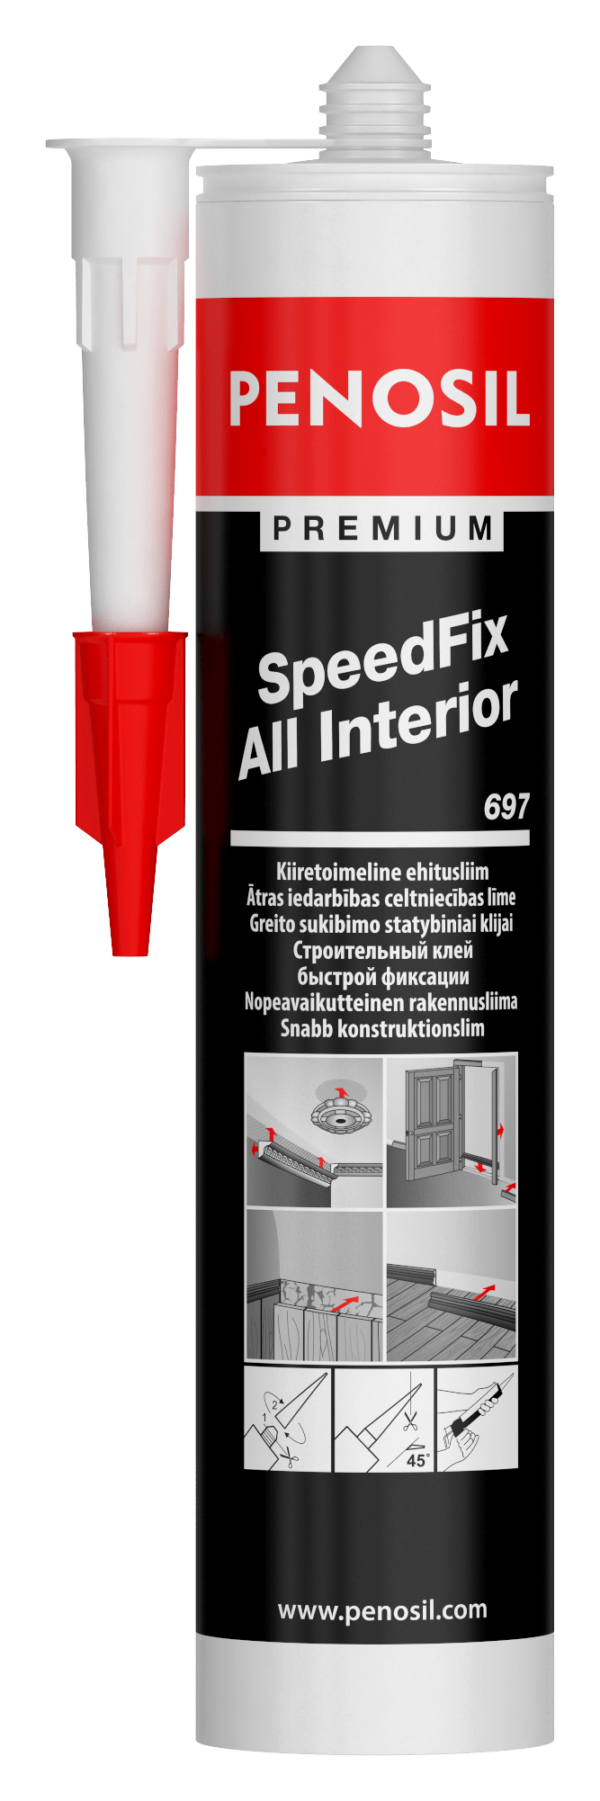 Penosil SpeedFix All Interior 697 adhesive